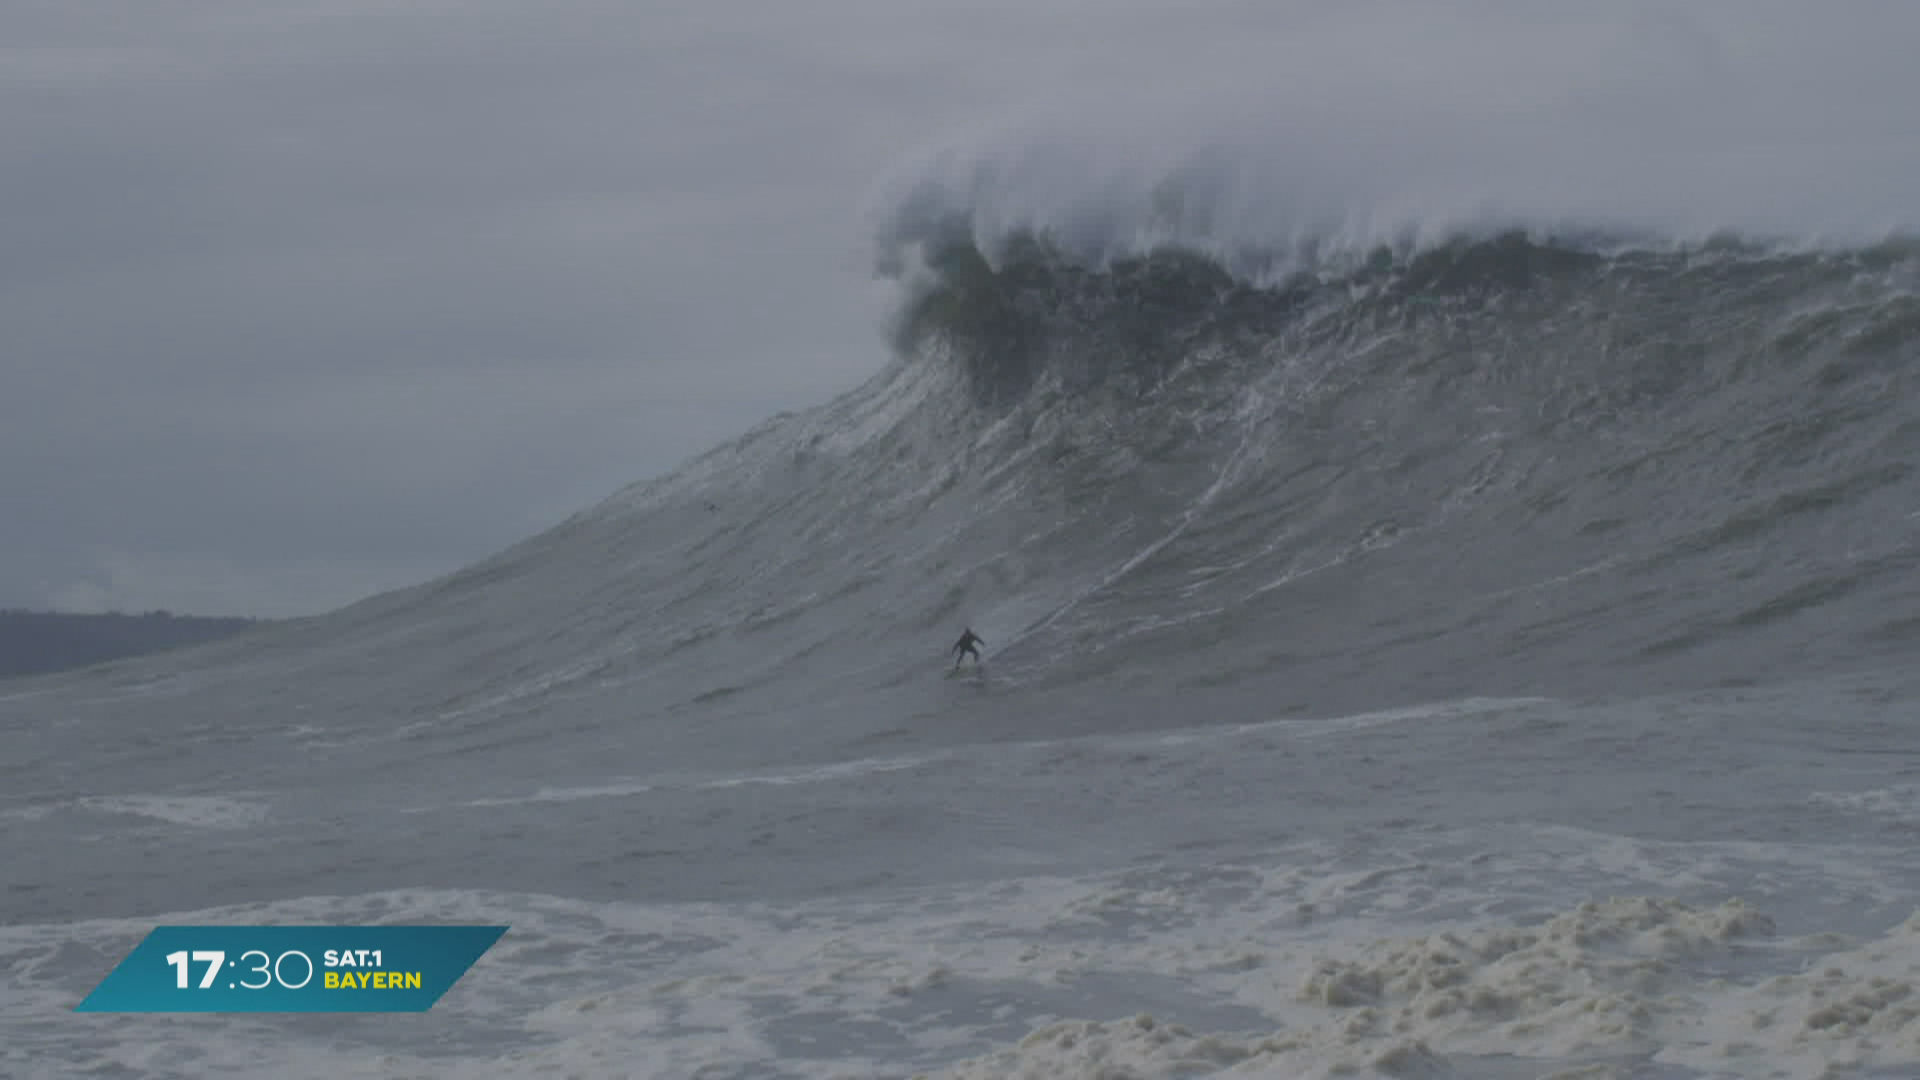 Einer der besten Big-Wave-Surfer: Knackt Nürnberger den Weltrekord?